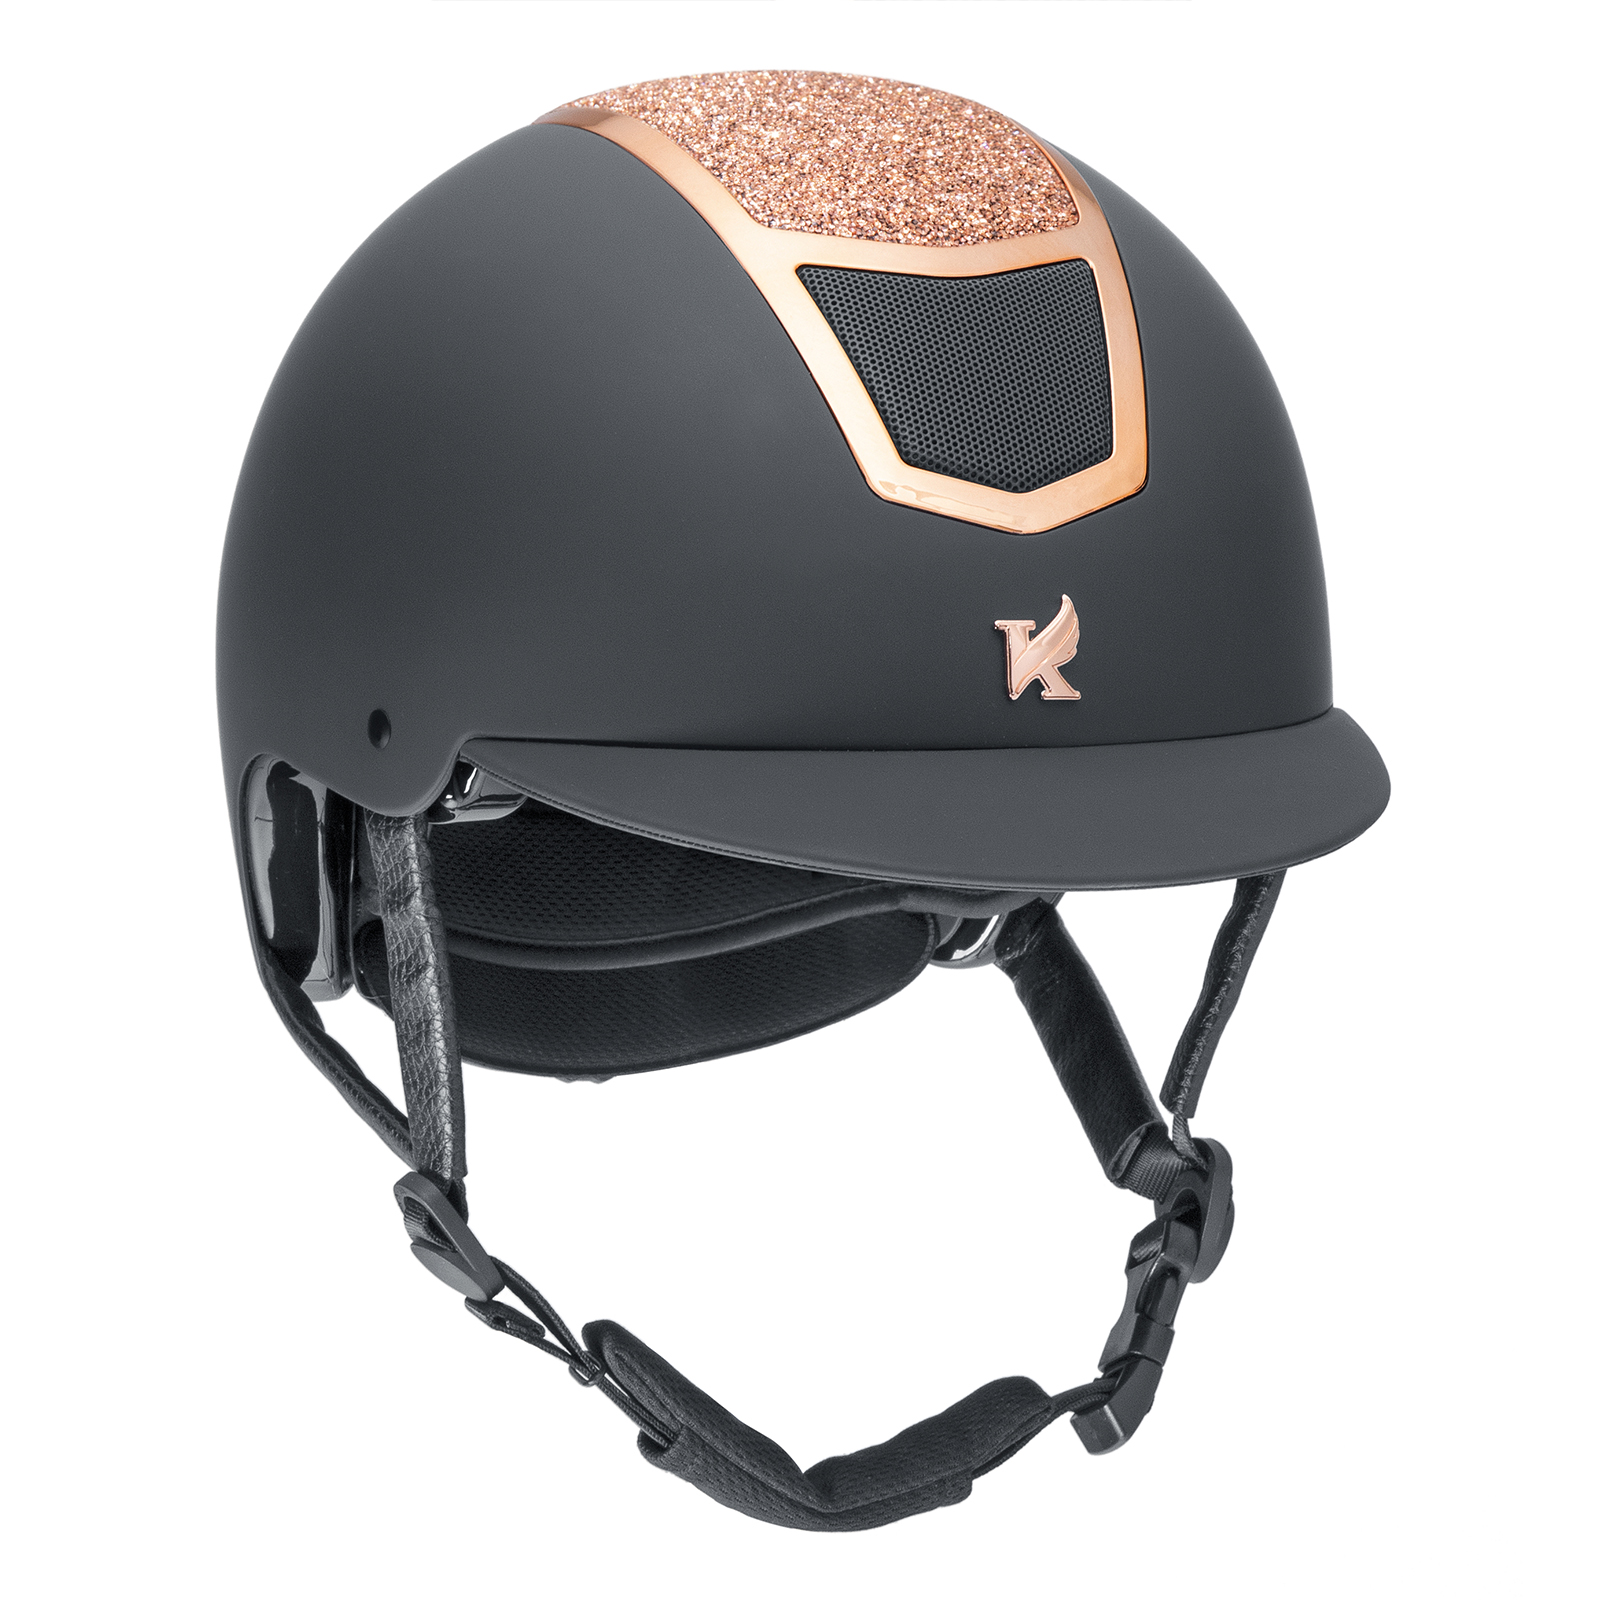 Шлем для верховой езды с регулировкой SHIRES Karben Valentina, обхват головы 59-61 см